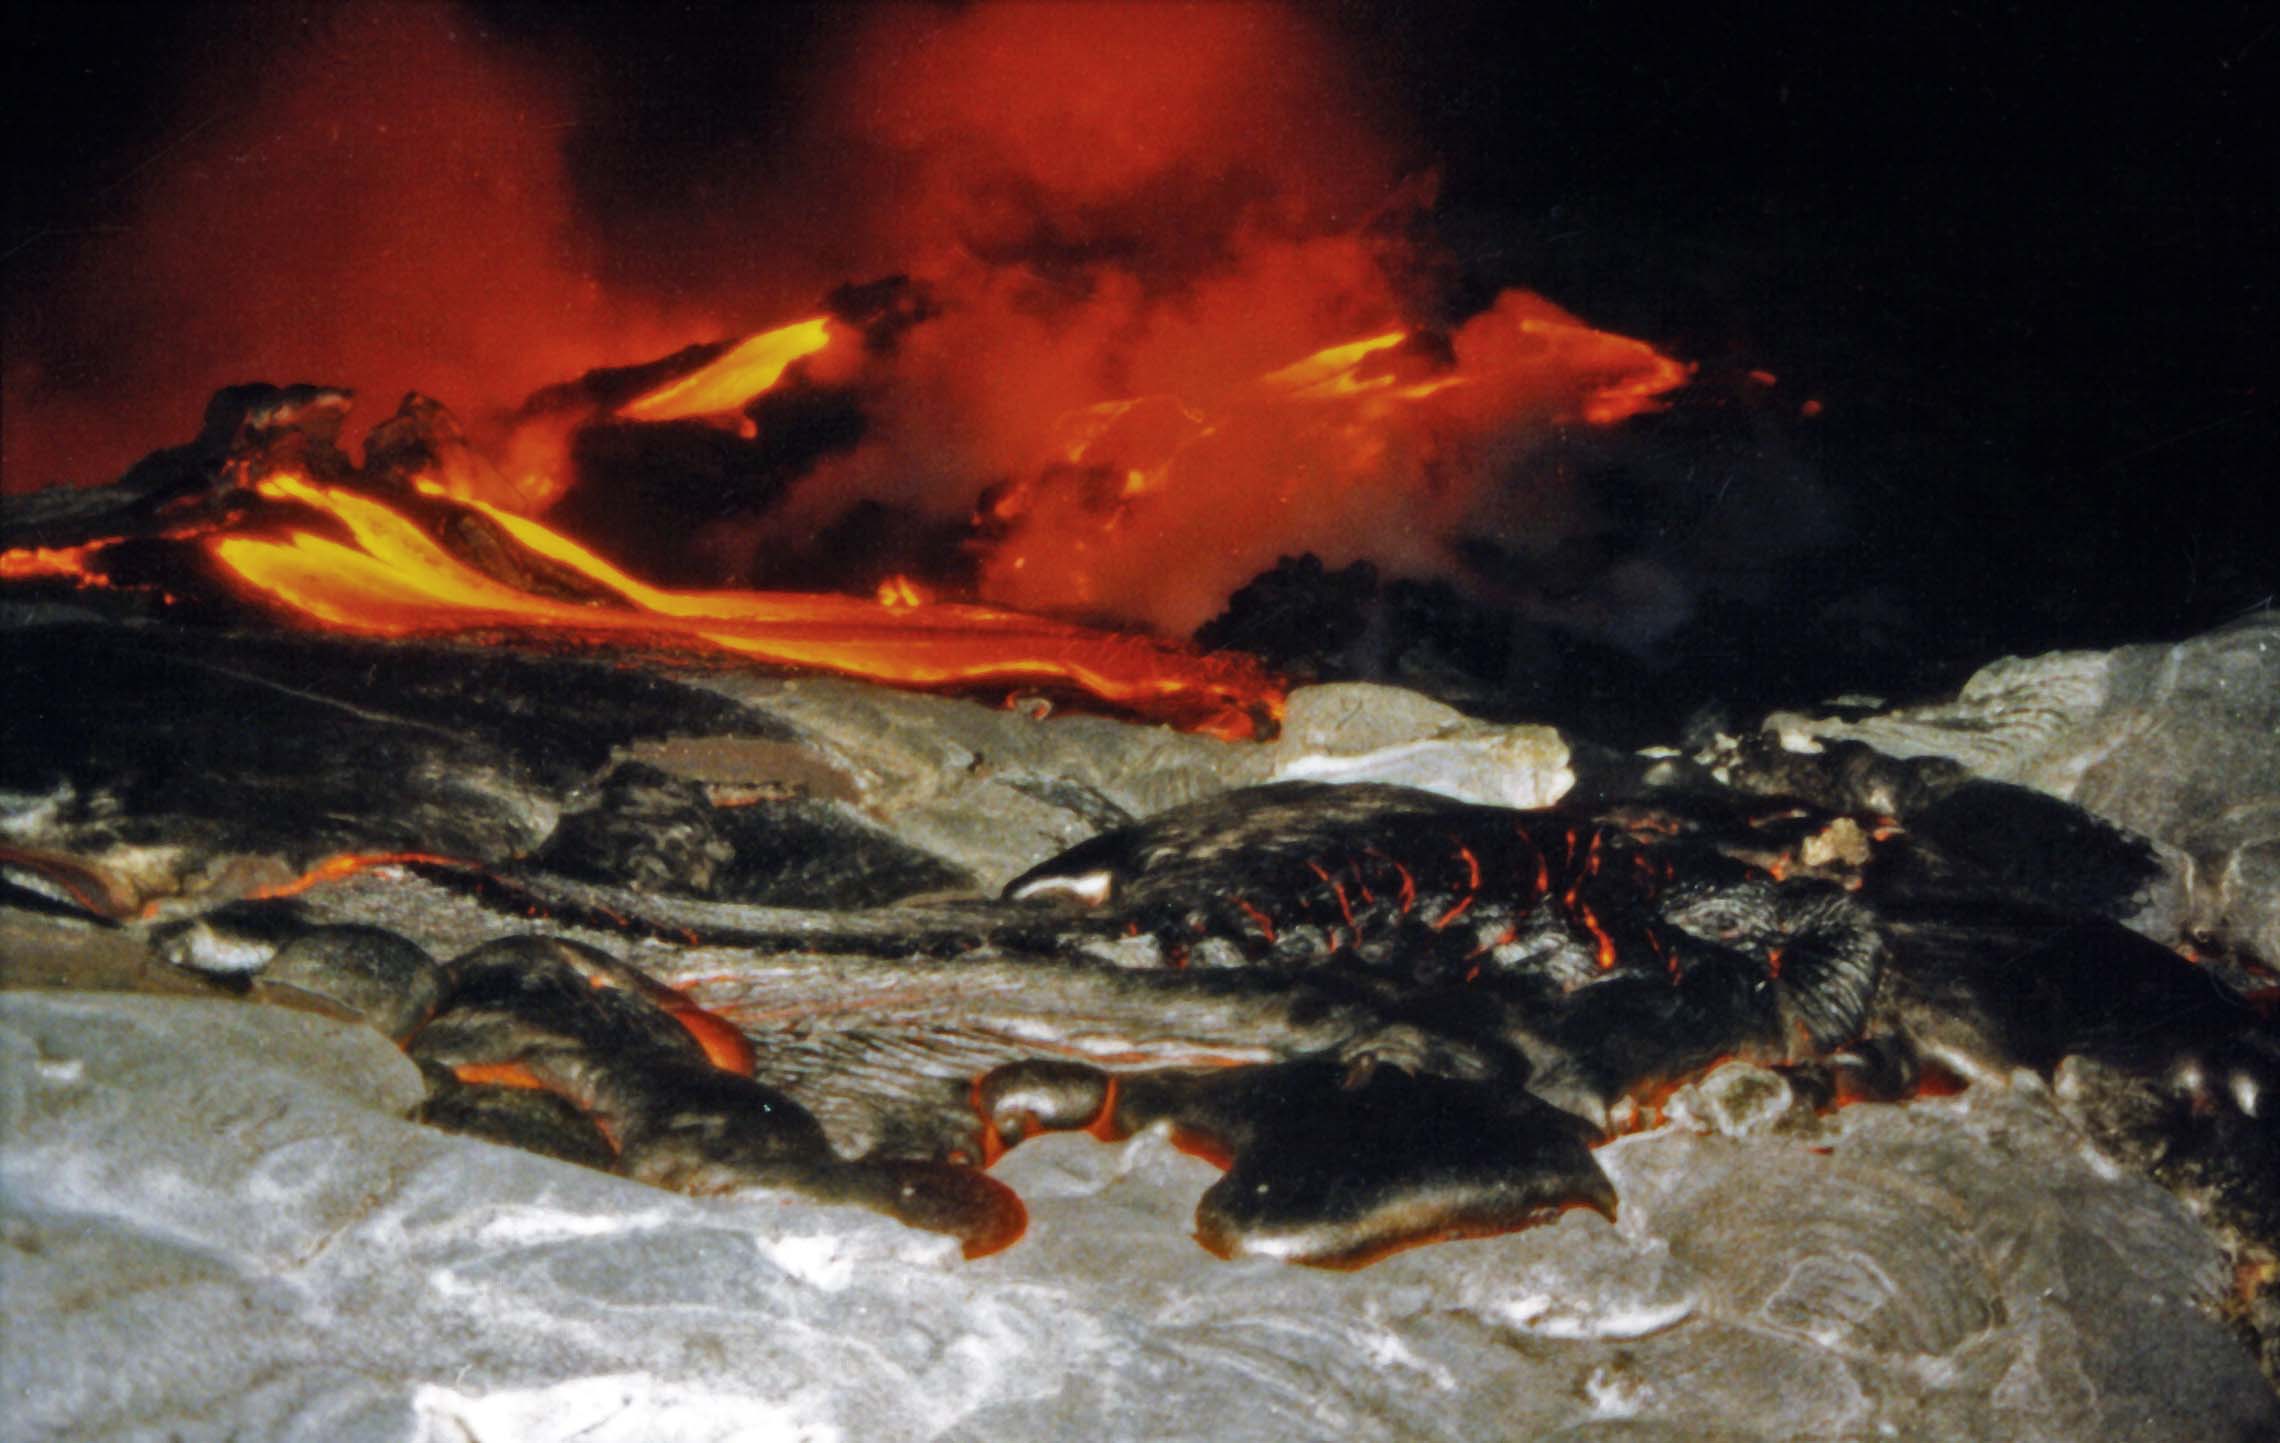 Lava Flow Emanates through Crust of Cooled Lava